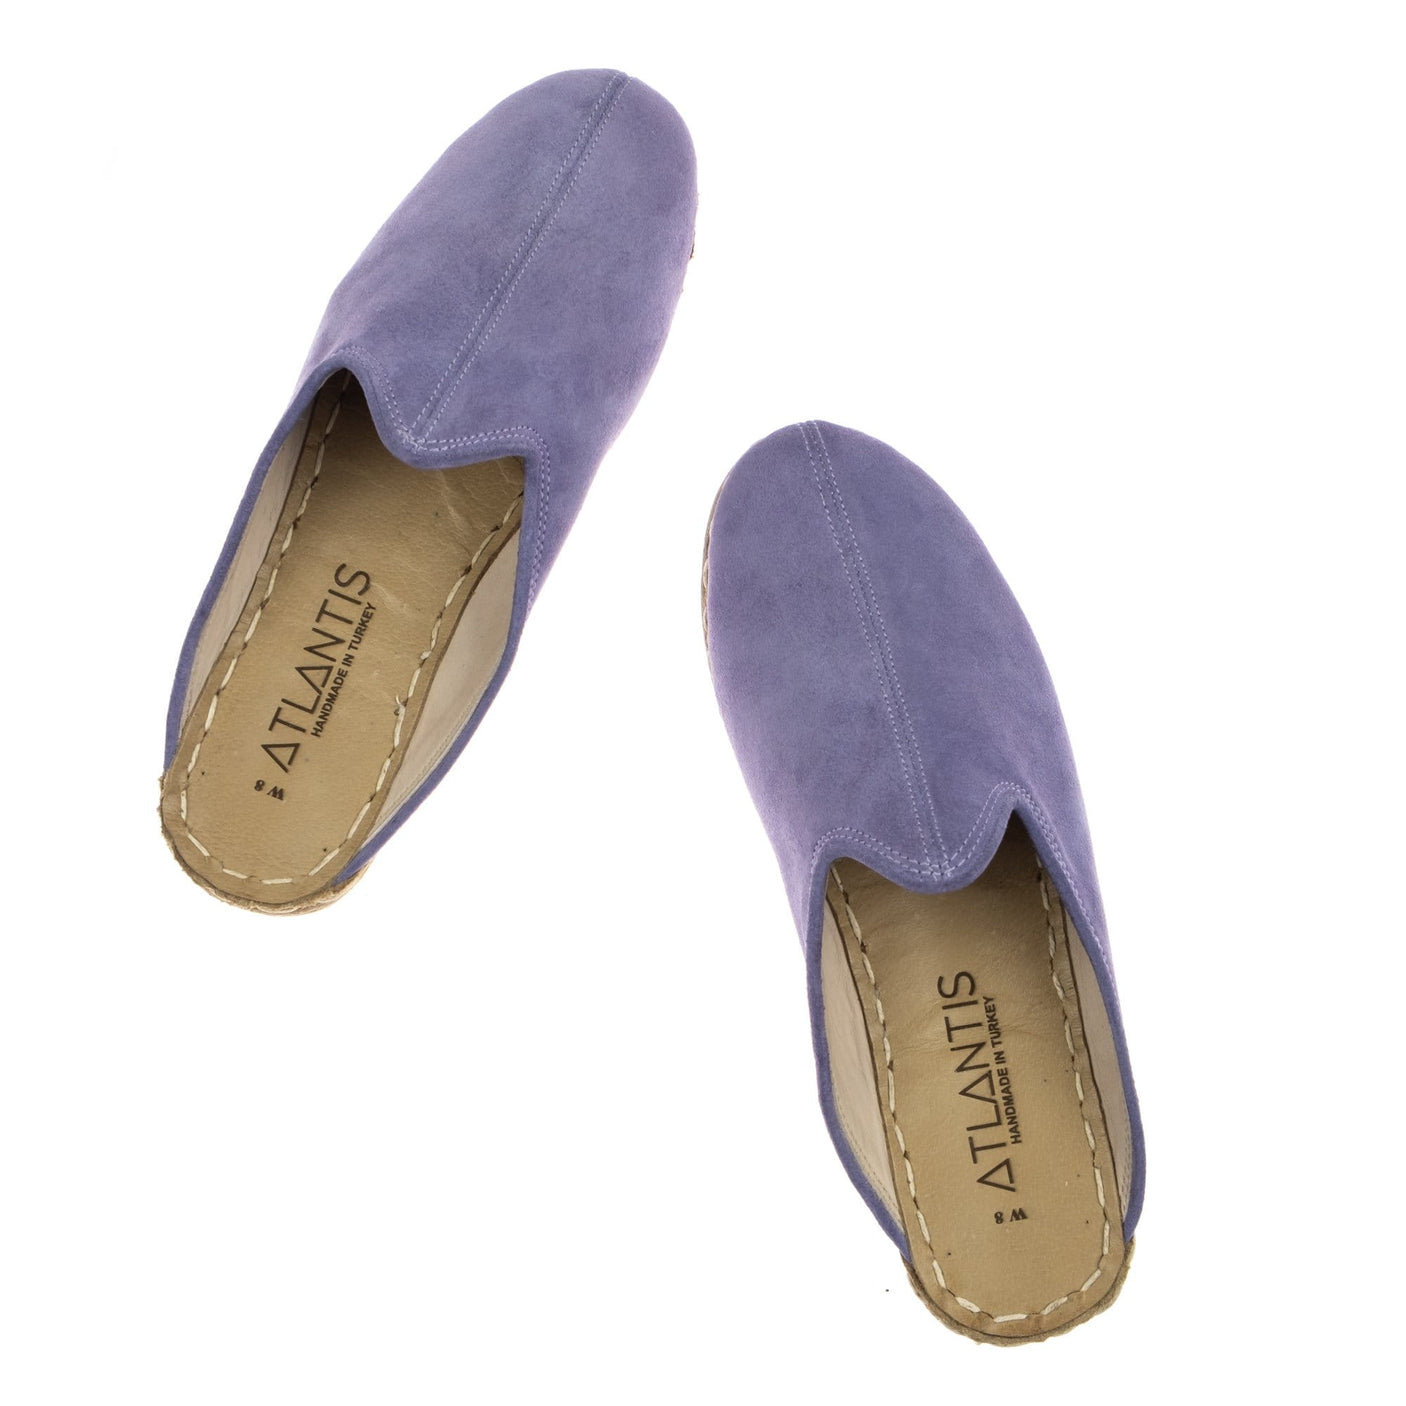 Lavender Slippers - Turkish Slippers for Women & Men : Atlantis Handmade Shoes